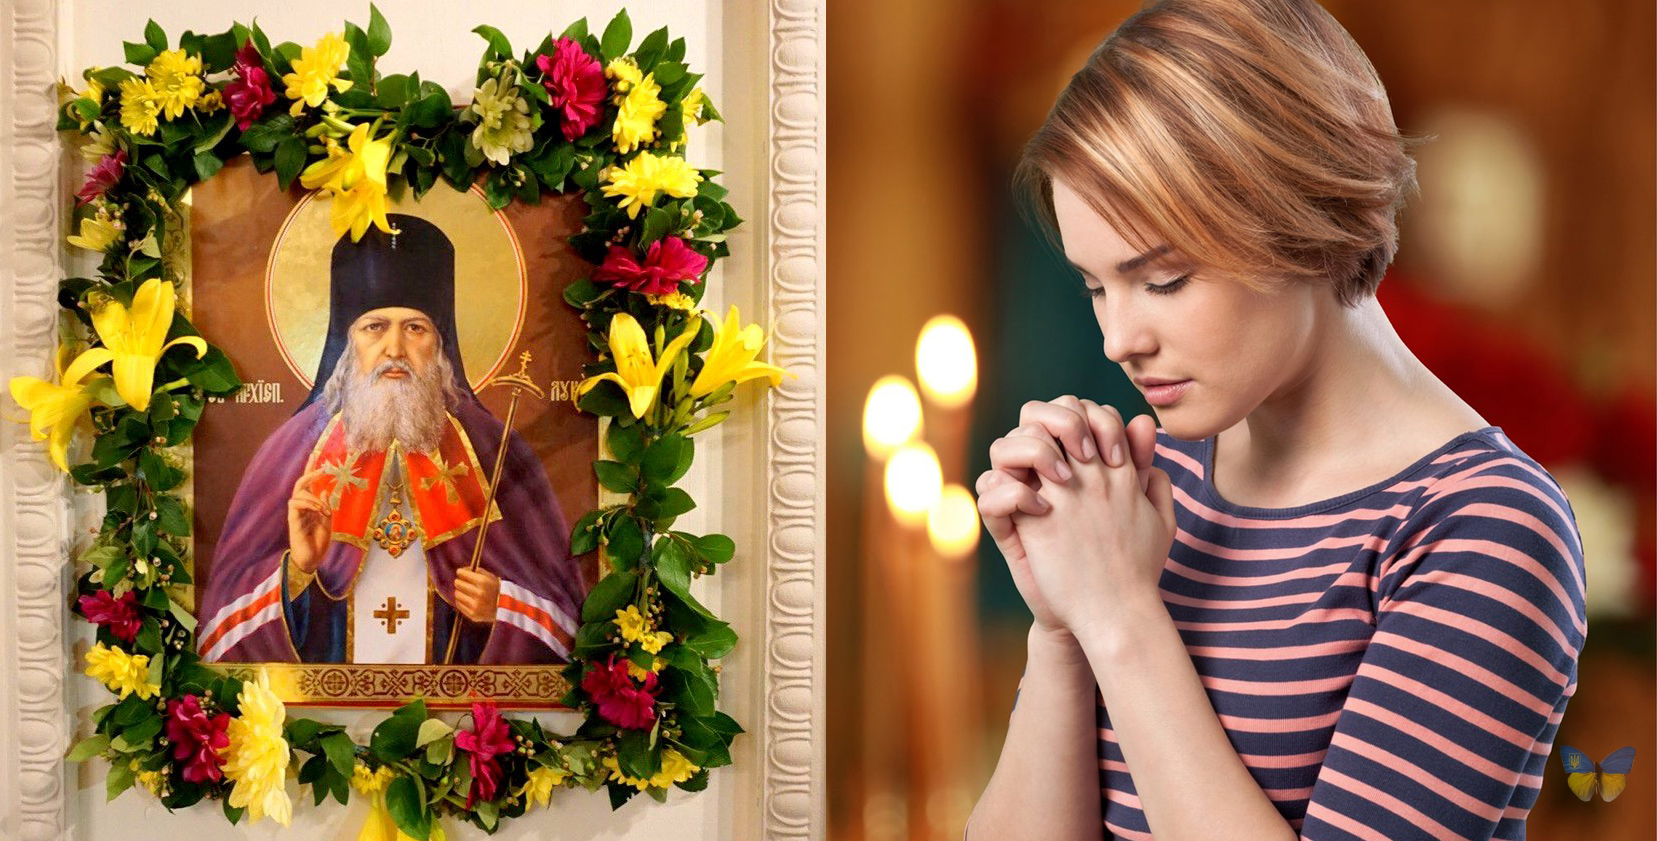 Особлива молитва до святого Луки, яку промовляють 20 лютого і просять здоров’я для себе та рідних